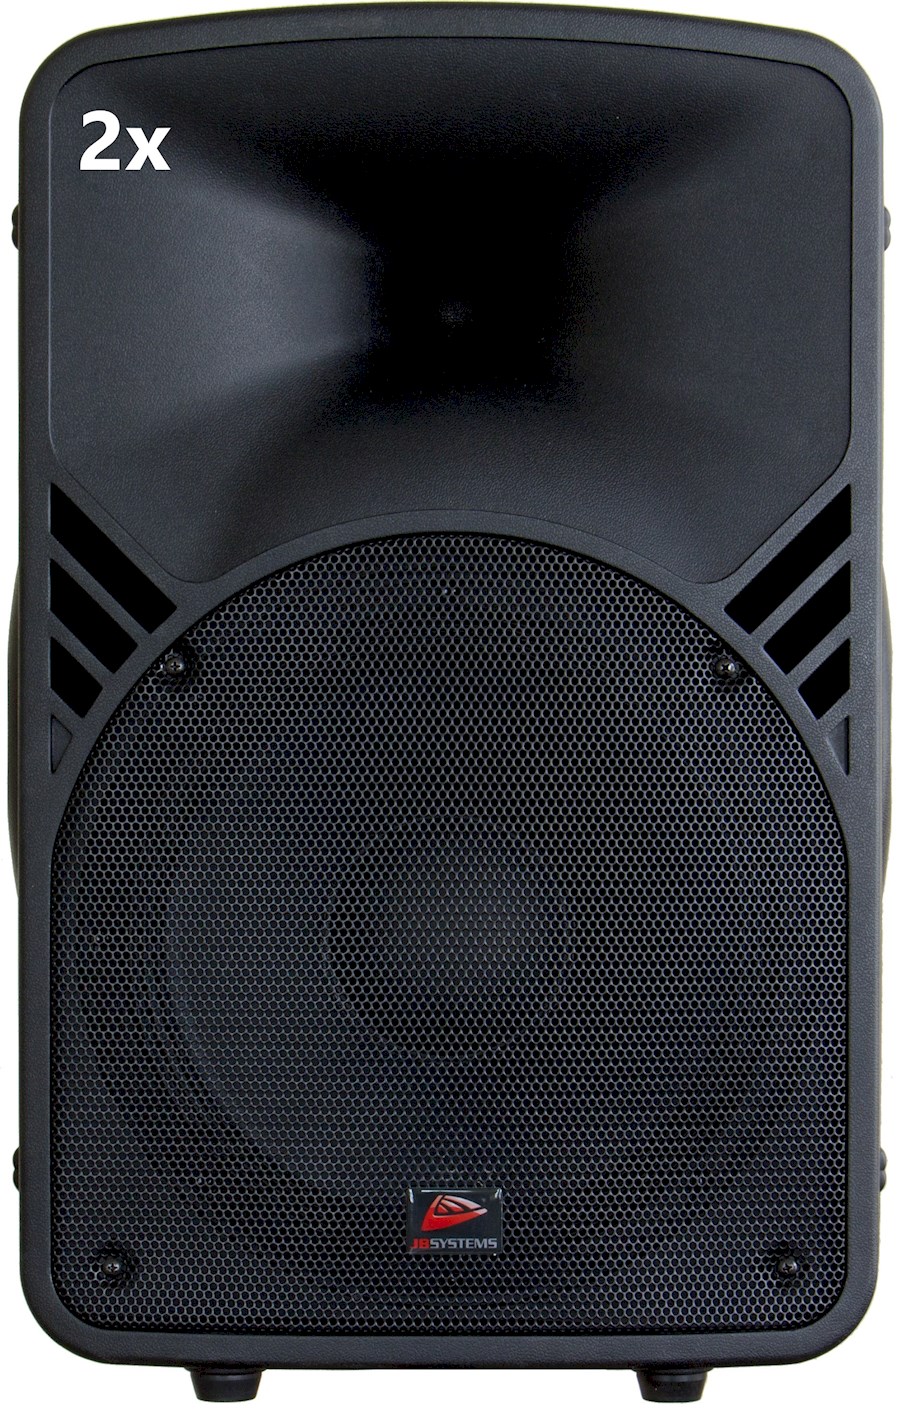 Miete 2x 12 inch top speaker... von Raoul